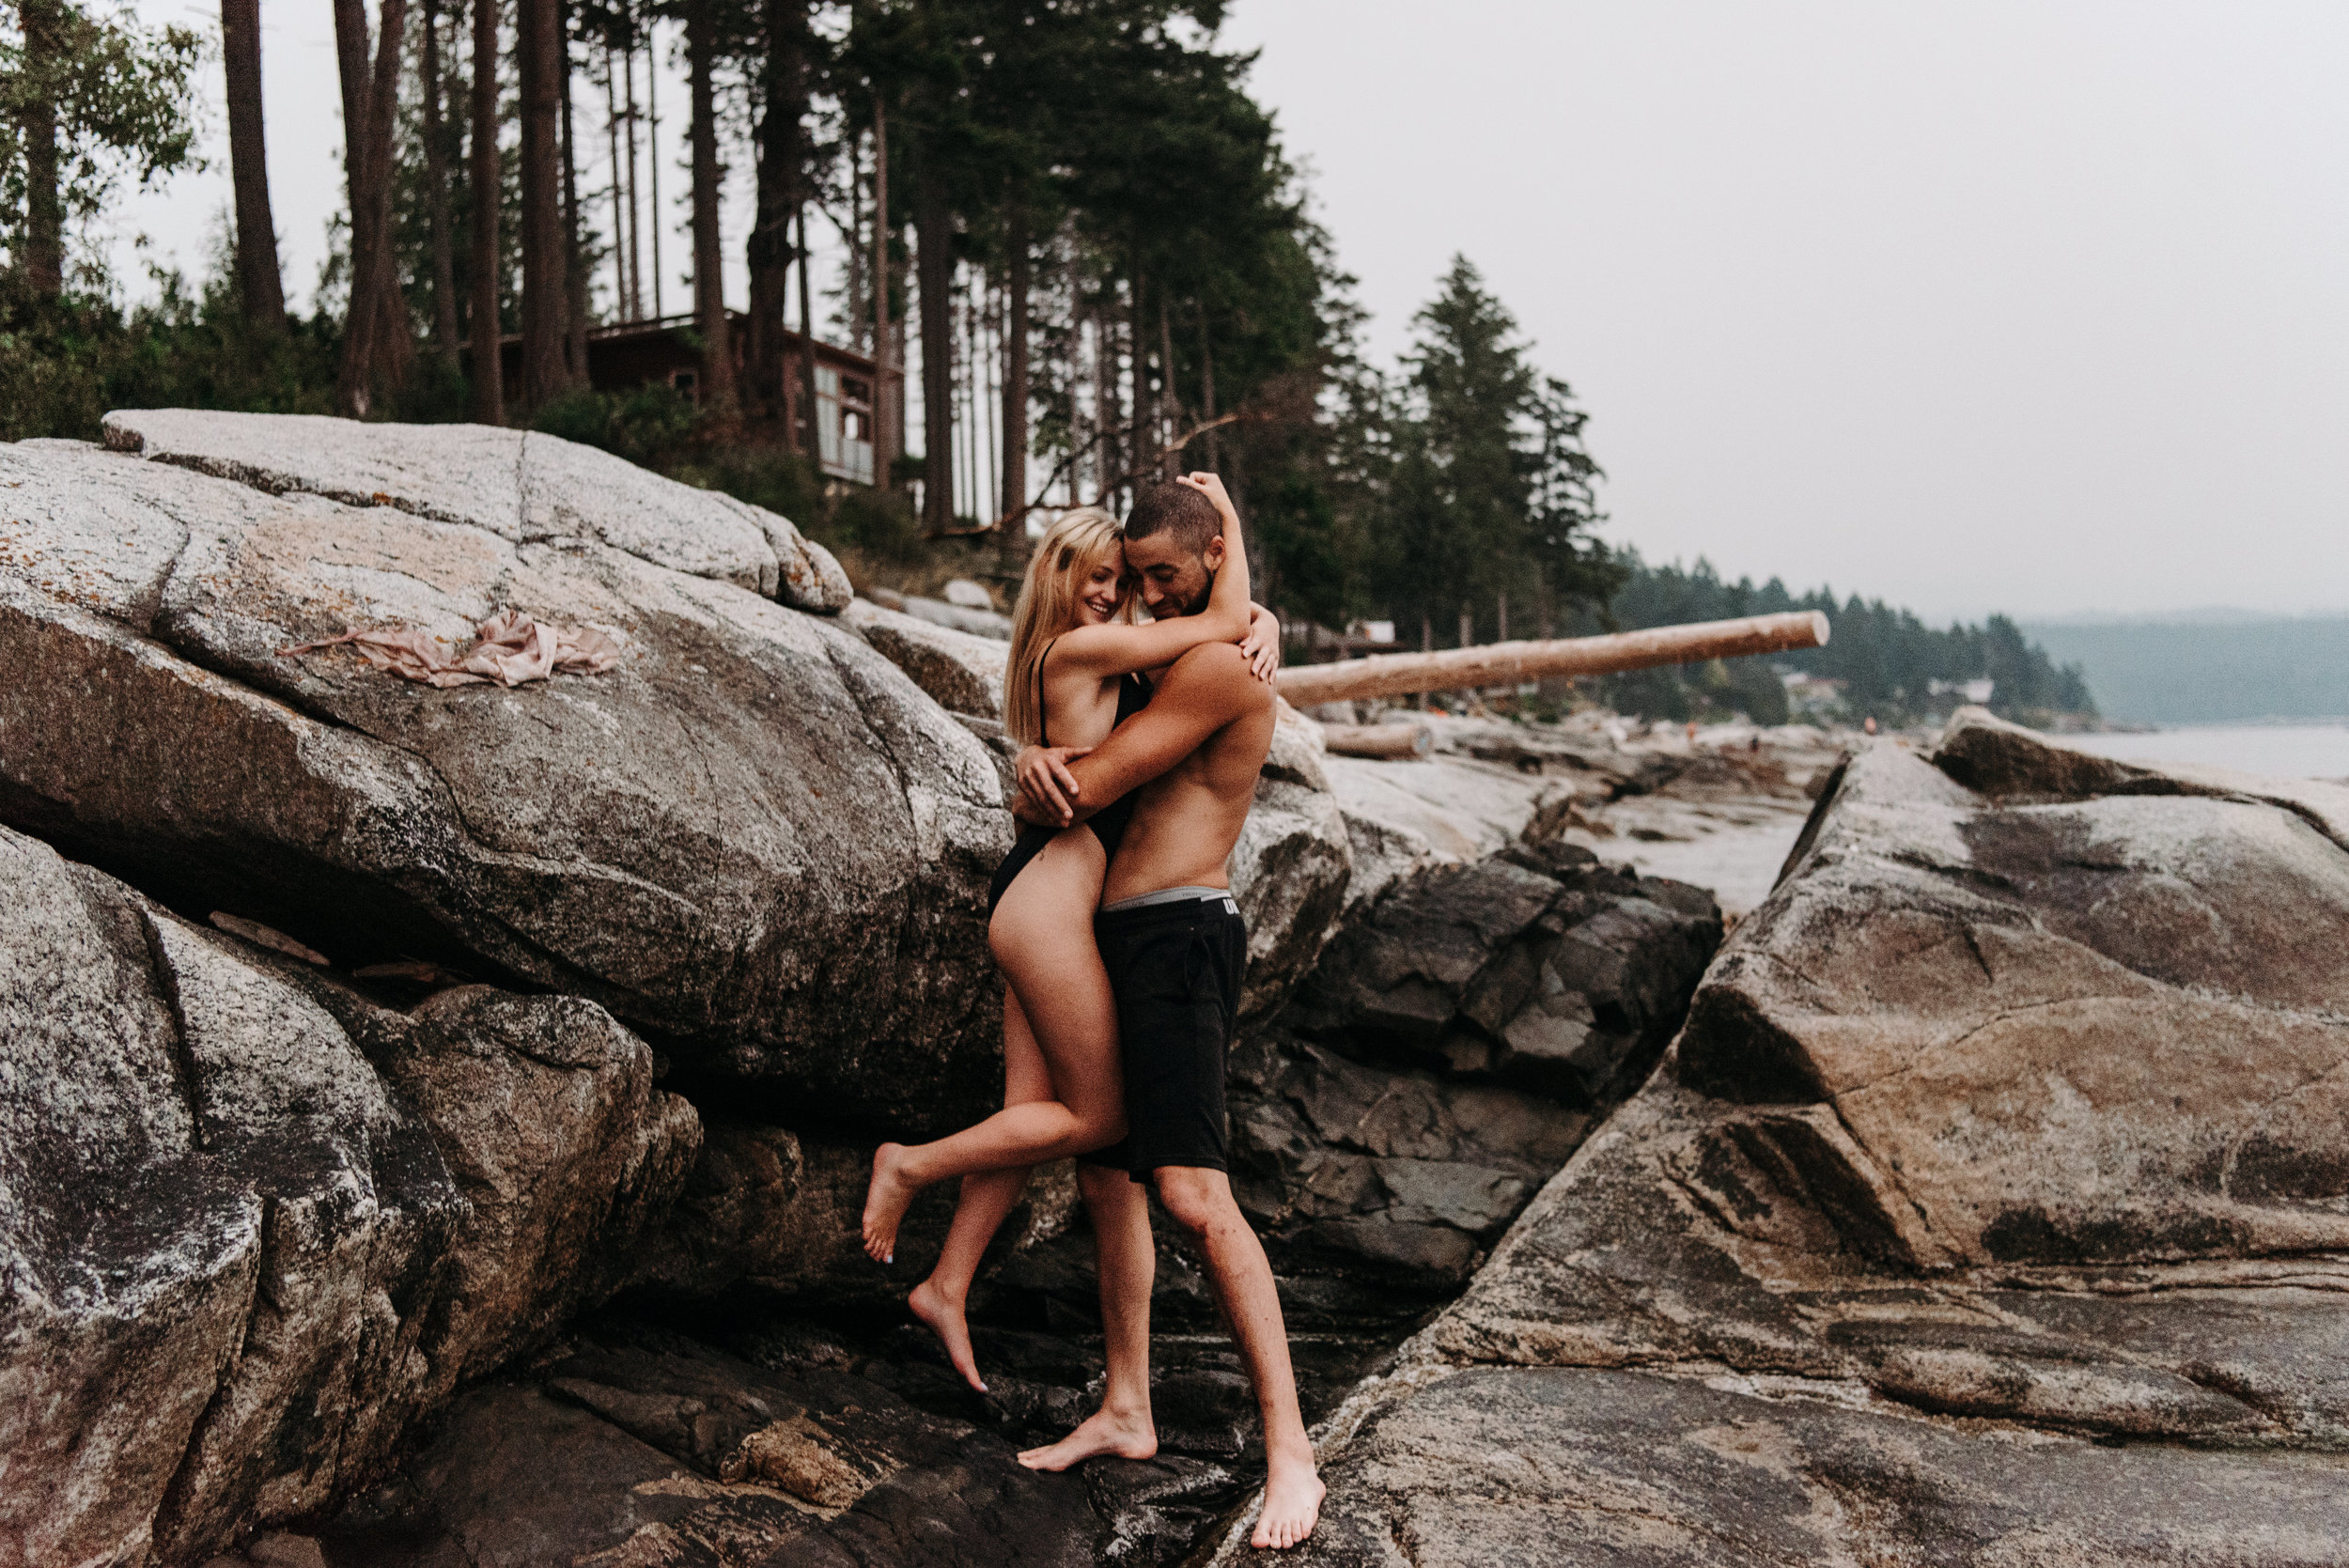 Sierra & Tyler Summer Beach Couples Session - Laura Olson Photography - Sunshine Coast BC Photographer-2745.jpg